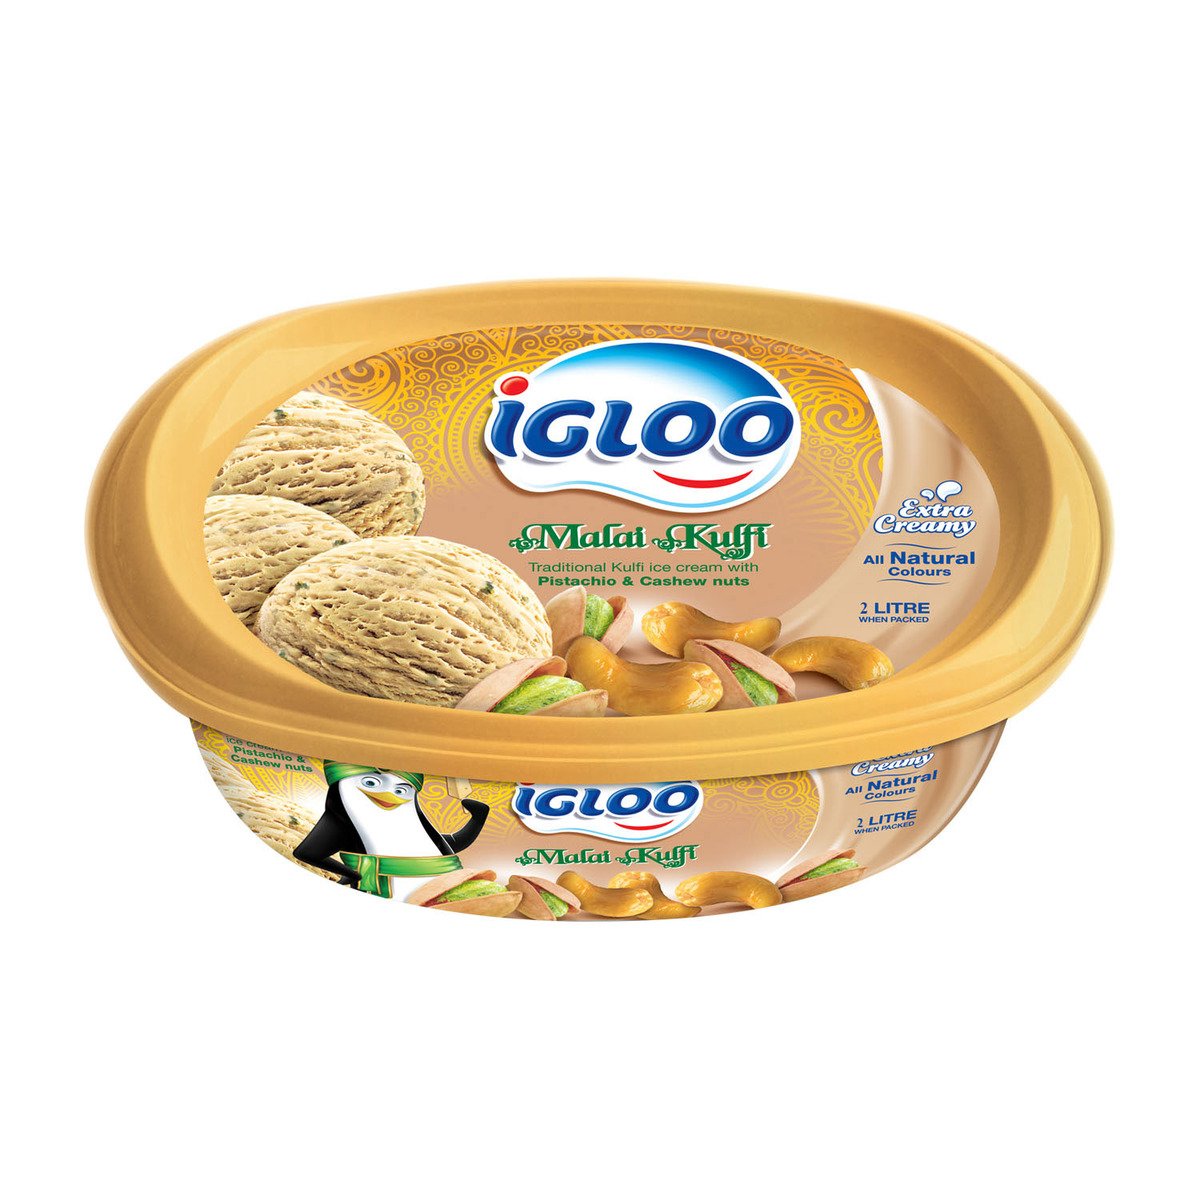 اشتري قم بشراء آيس كريم إيجلو مالاي كولفي بالفستق والكاجو 2 لتر Online at Best Price من الموقع - من لولو هايبر ماركت Ice Cream Take Home في السعودية